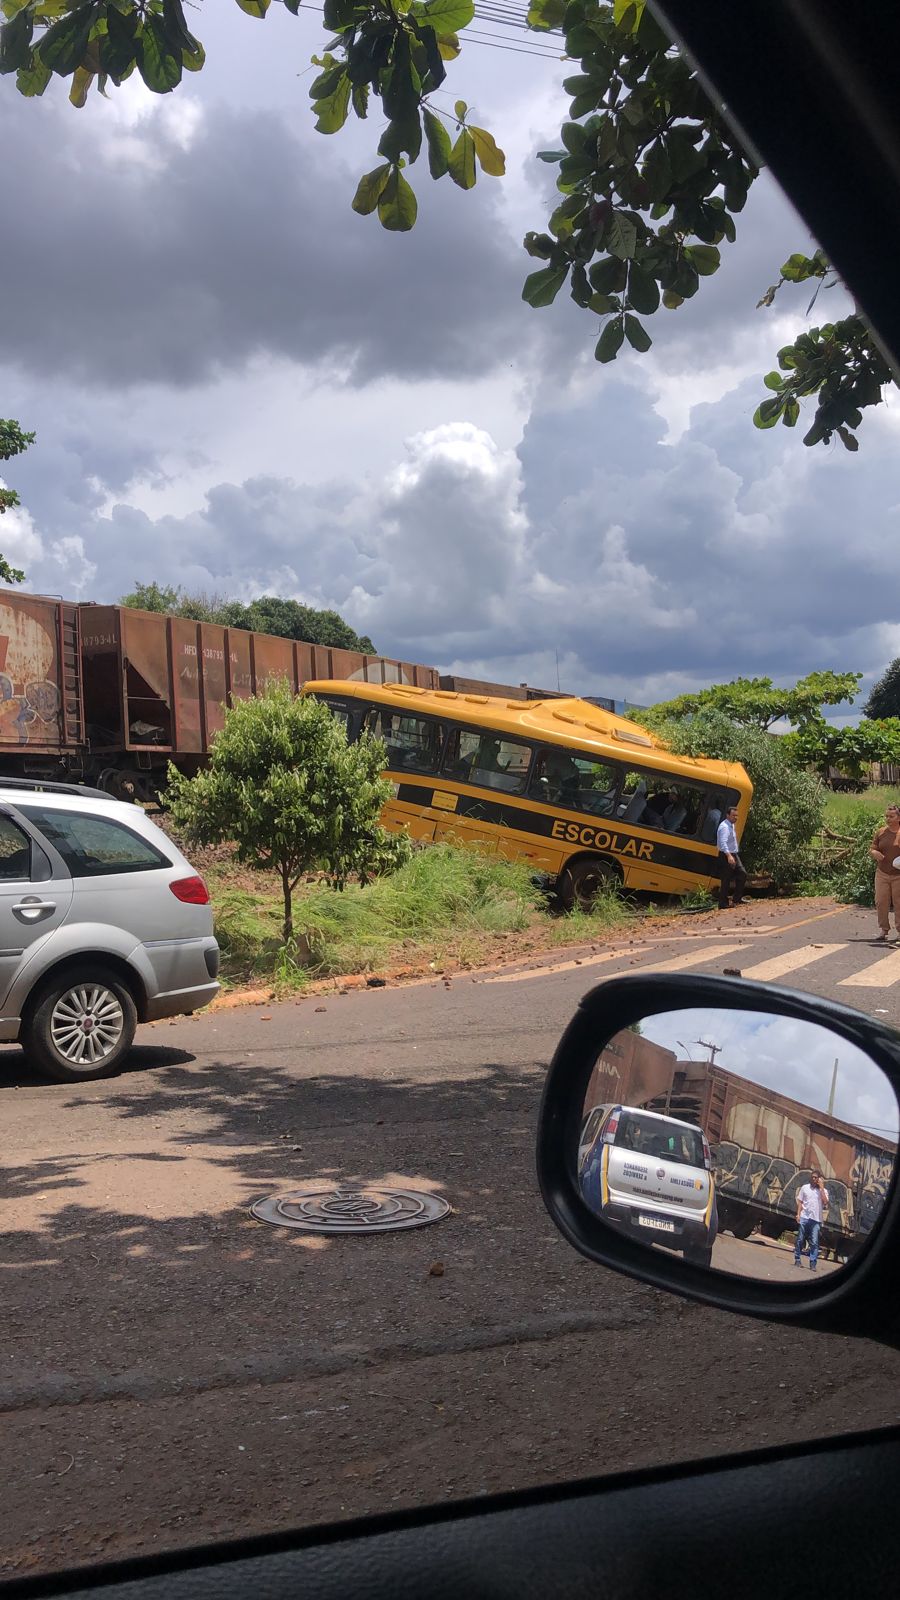 Local onde ônibus da Apae foi atingido por trem tem sinalização 'adequada',  afirma ANTT; três pessoas morreram, Norte e Noroeste